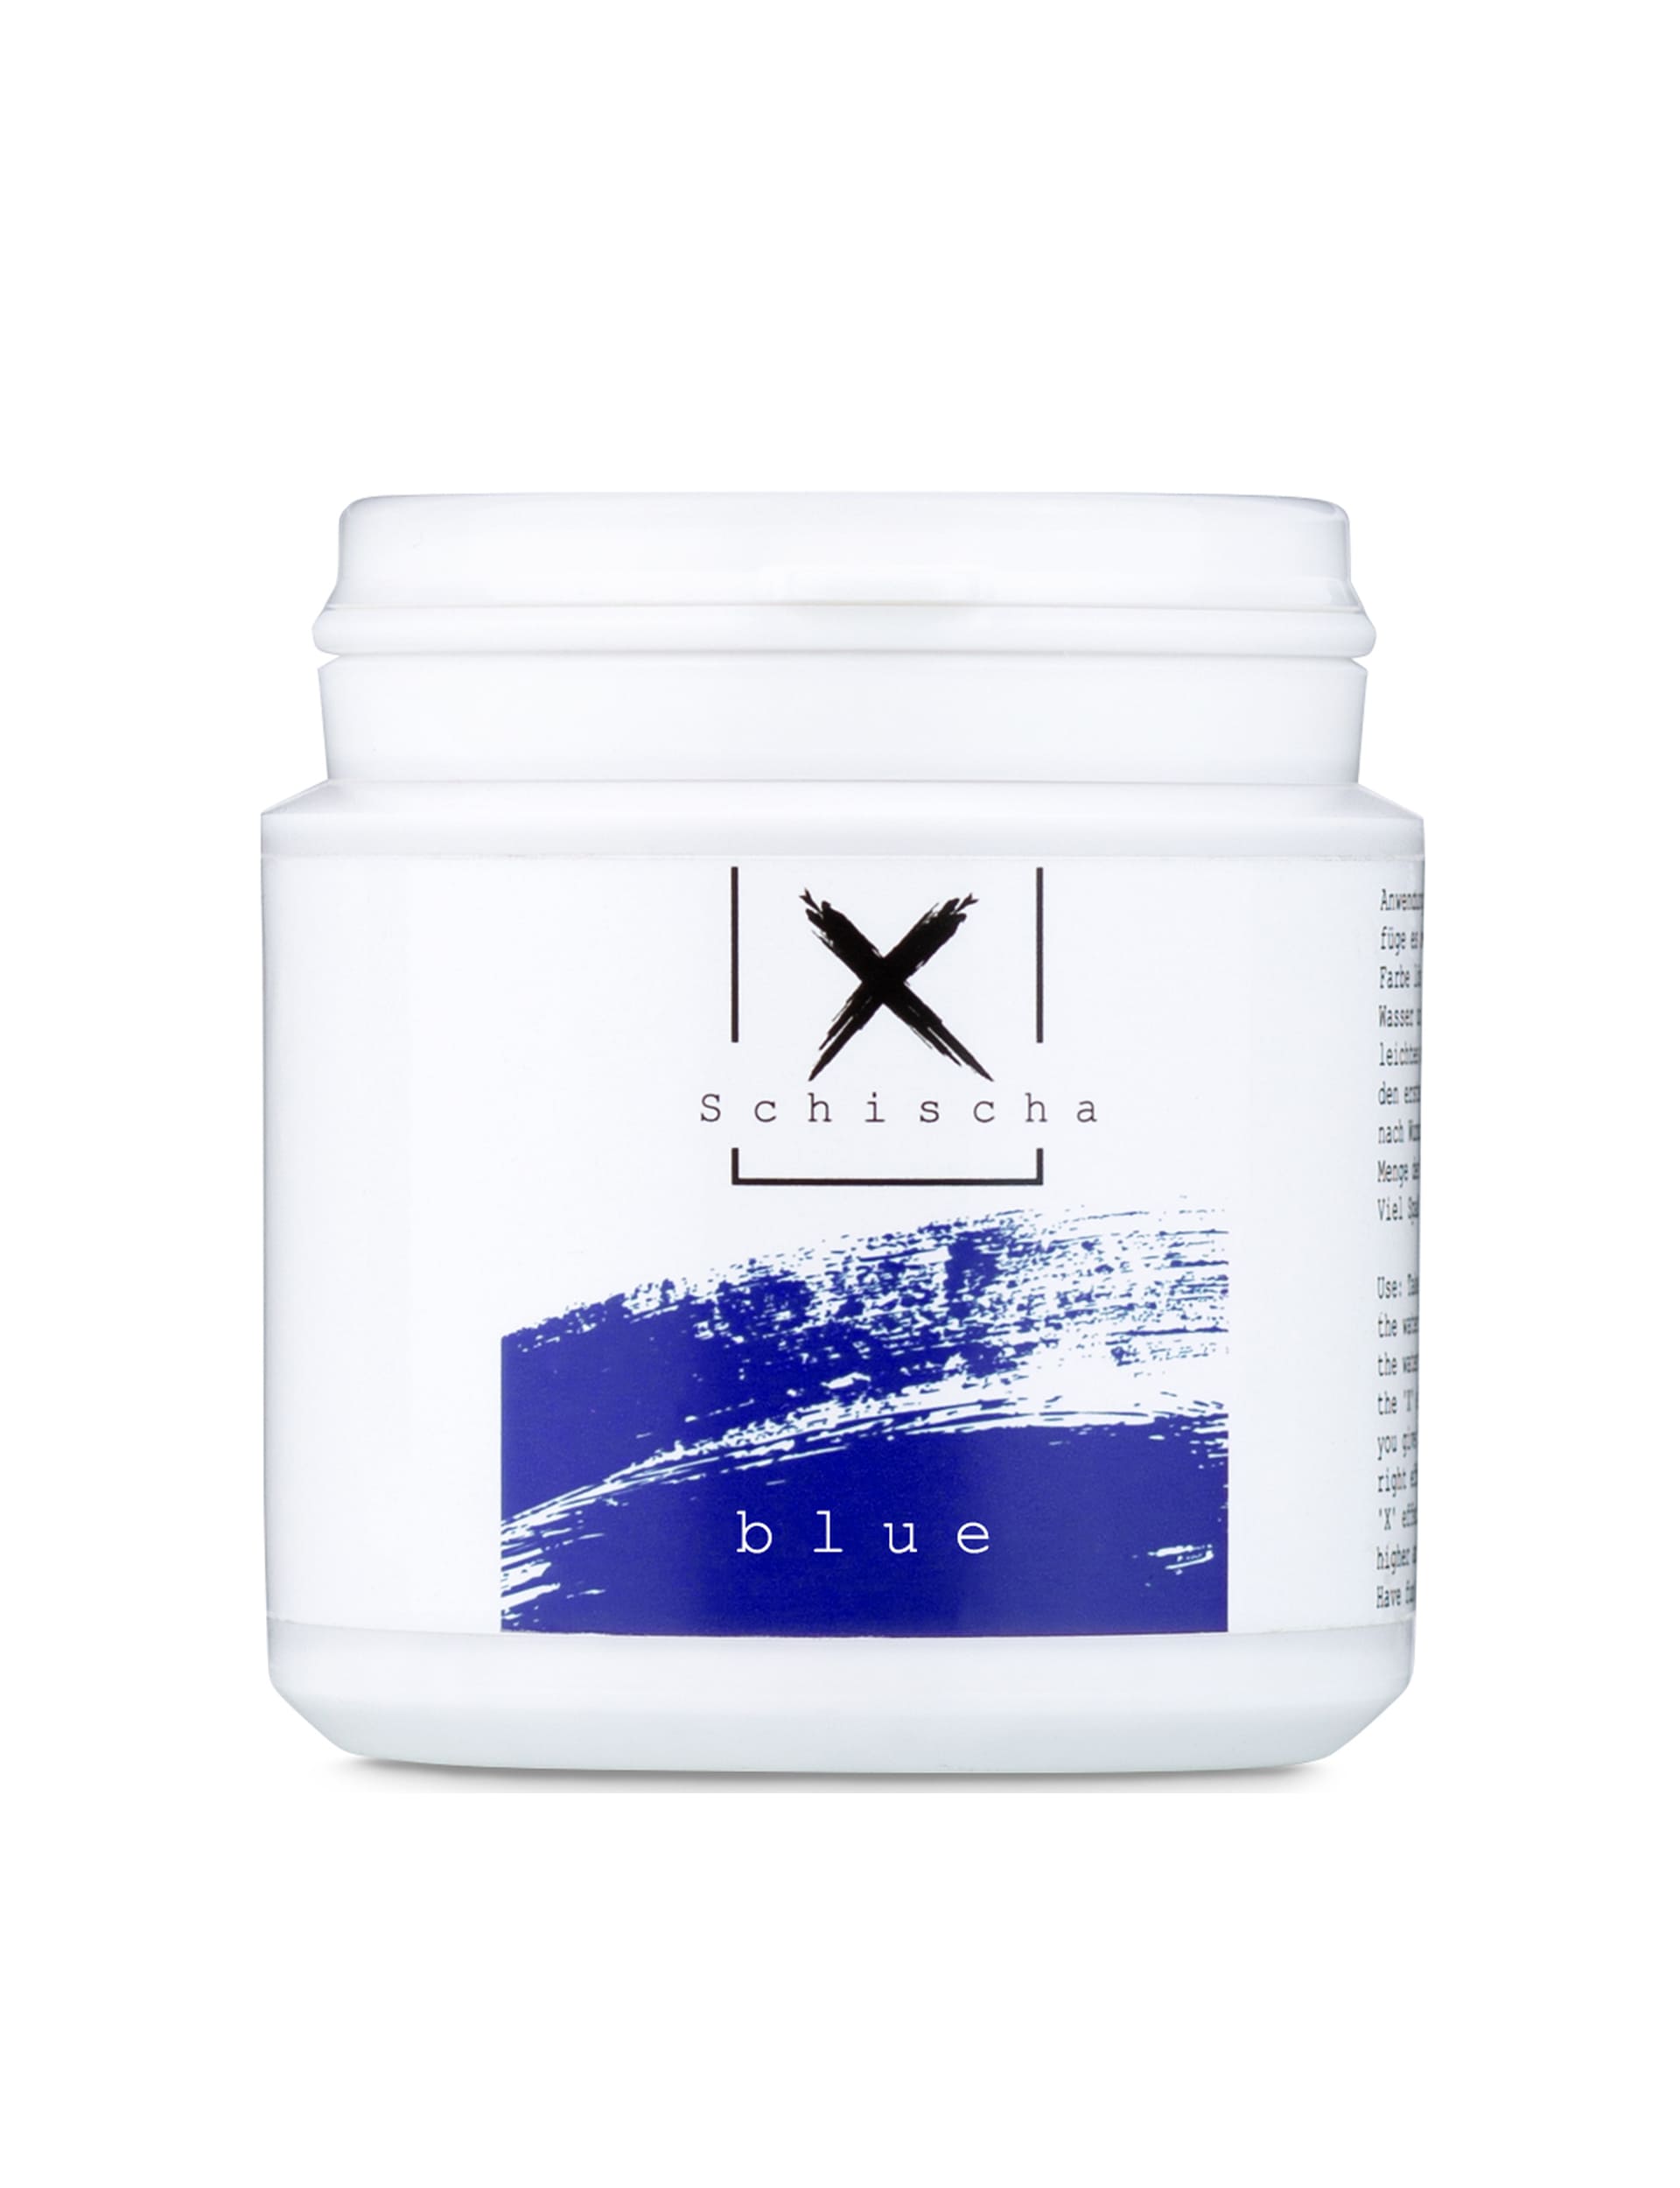 X-Schischa / Blue / Sparkle / Farbe